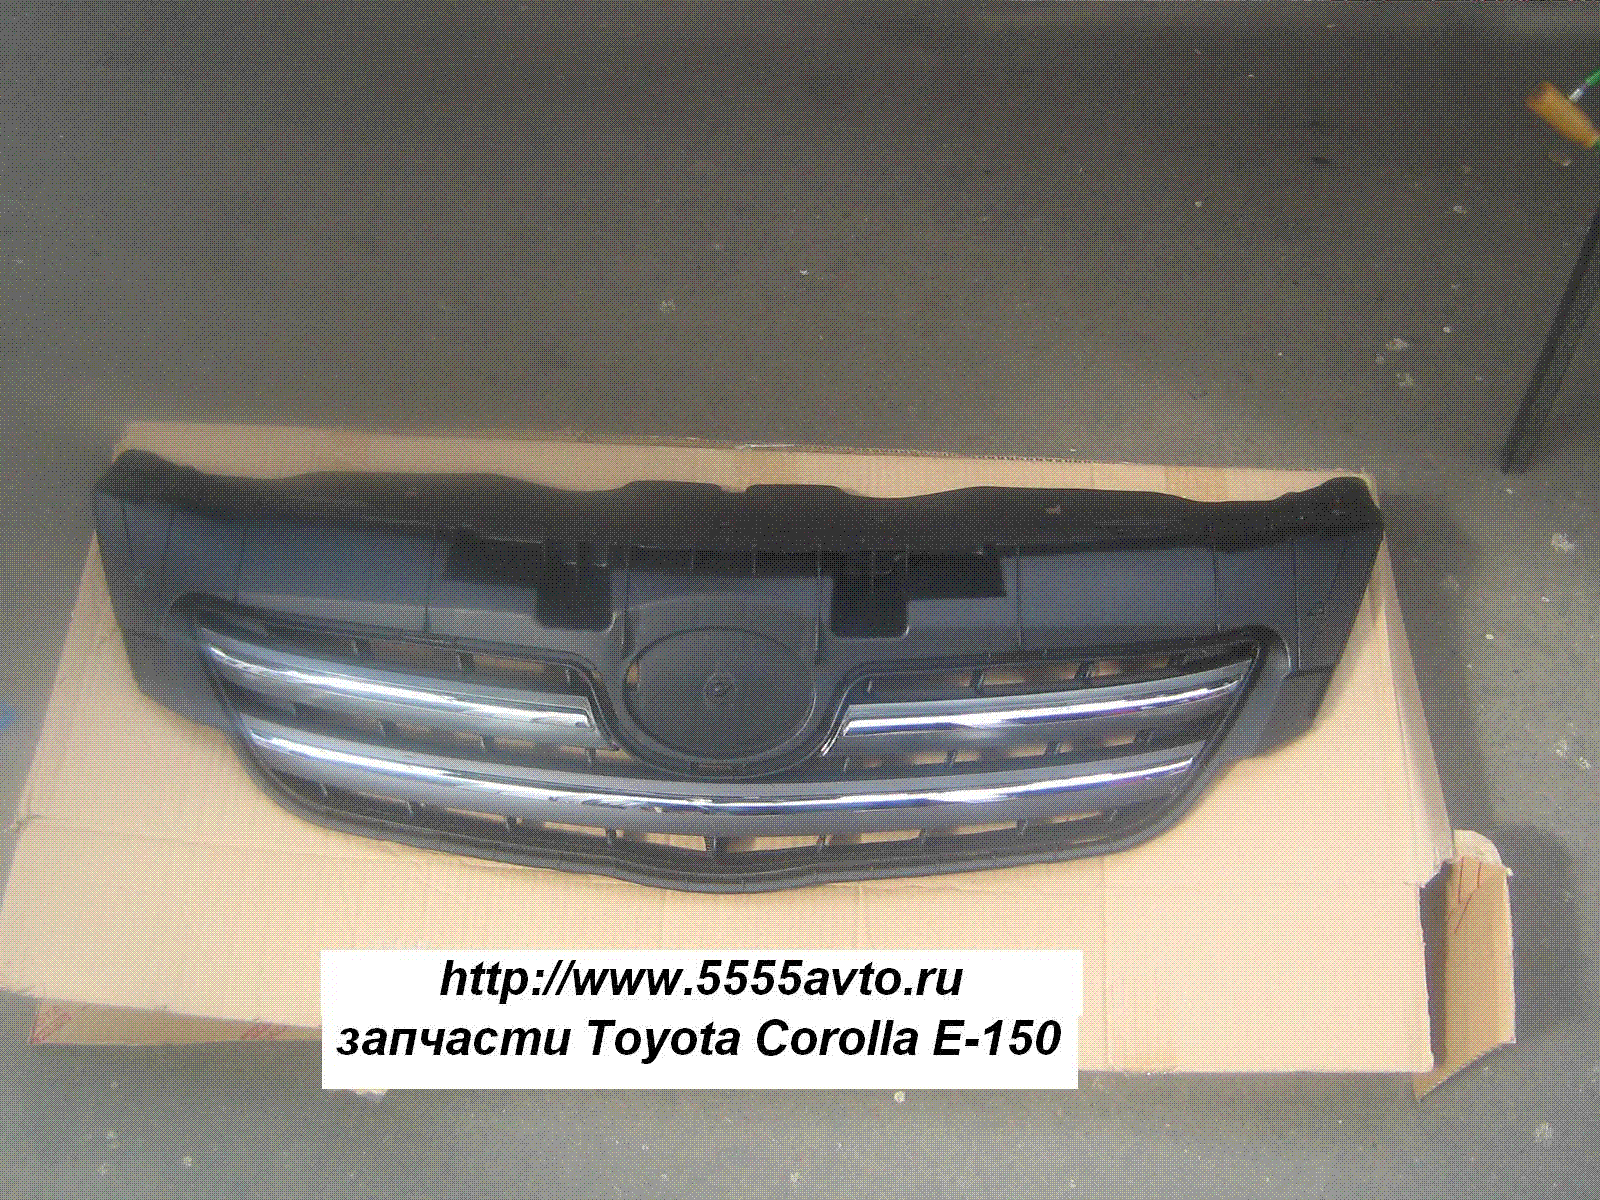 ешетка радиатора Toyota Corolla Е-150  TO20-0930